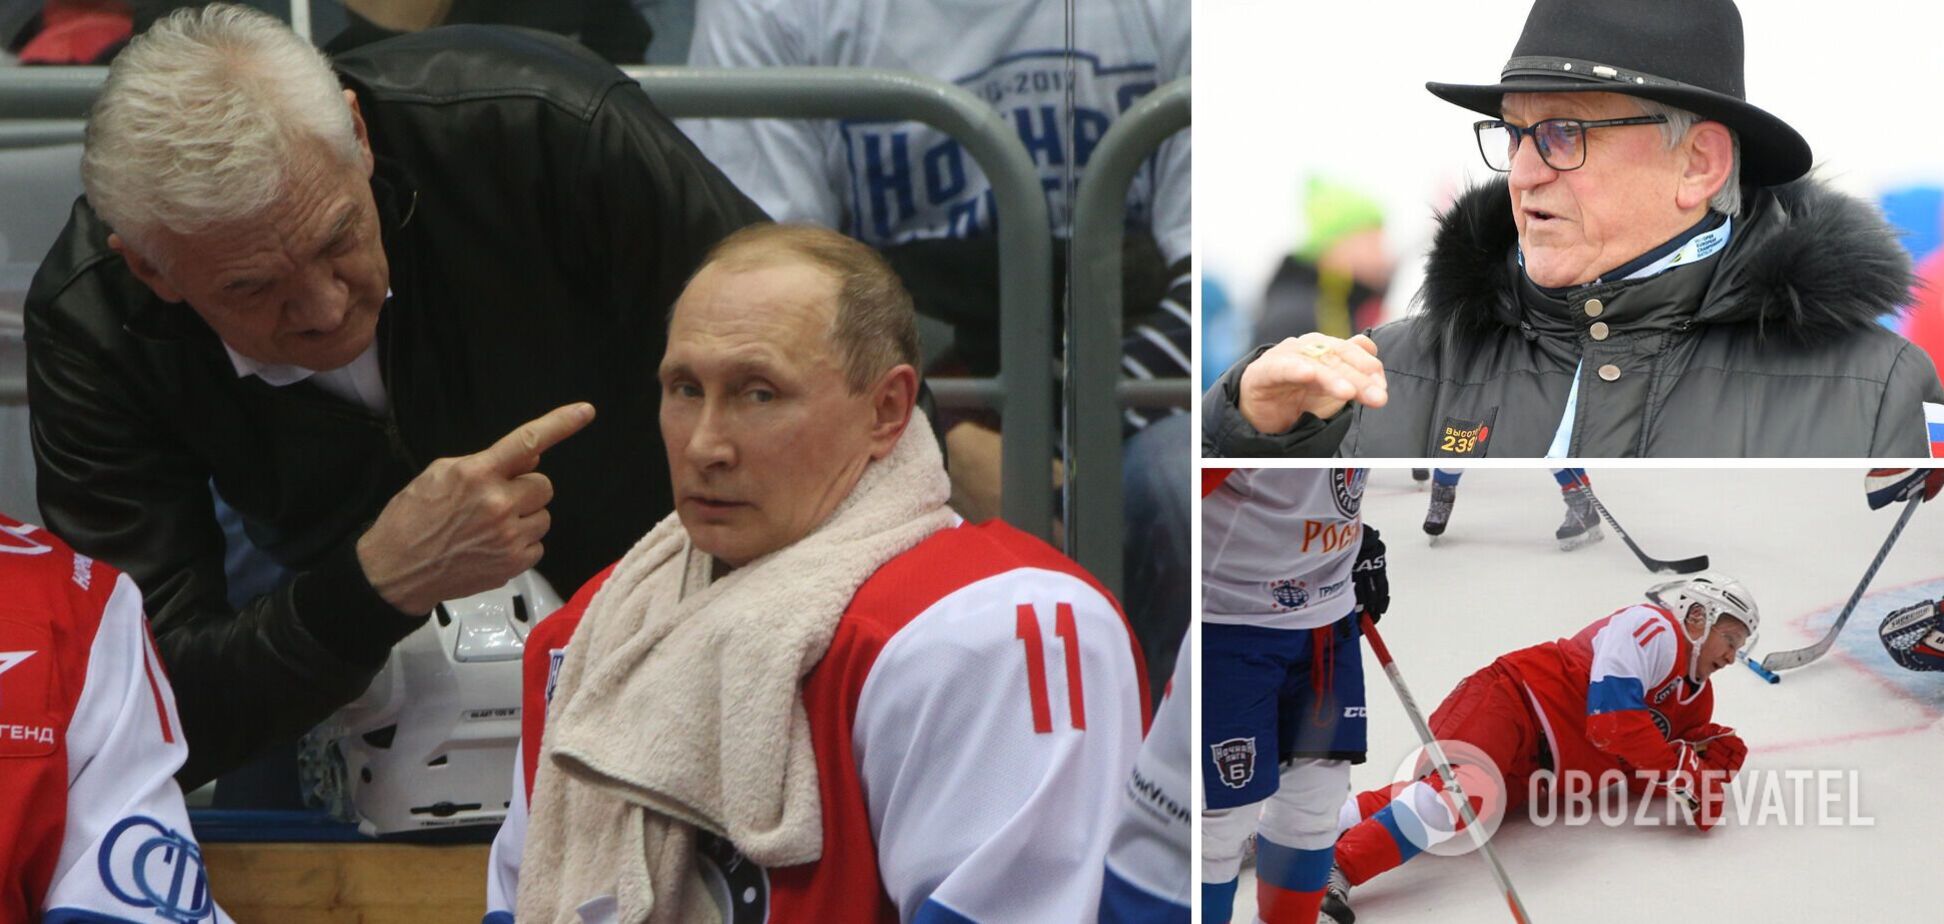 Олимпийский чемпион заявил, что Россию вернут на ЧМ после 'победы в СВО'. Ему посоветовали вызвать санитаров